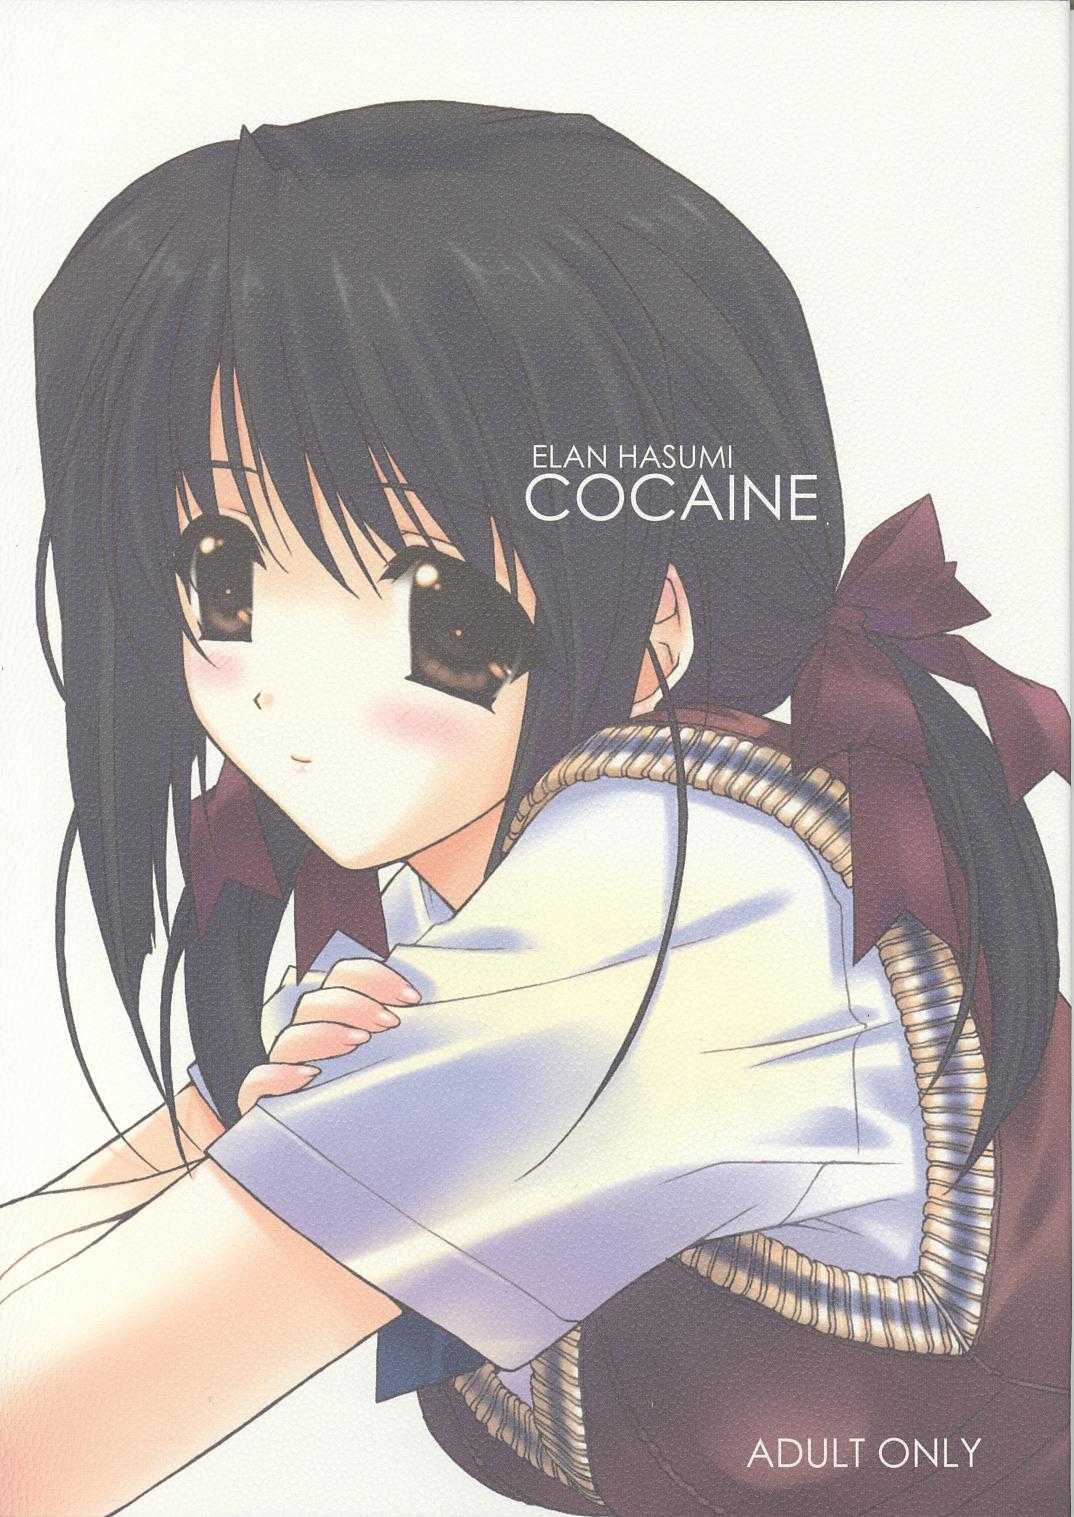 Cocaine 1